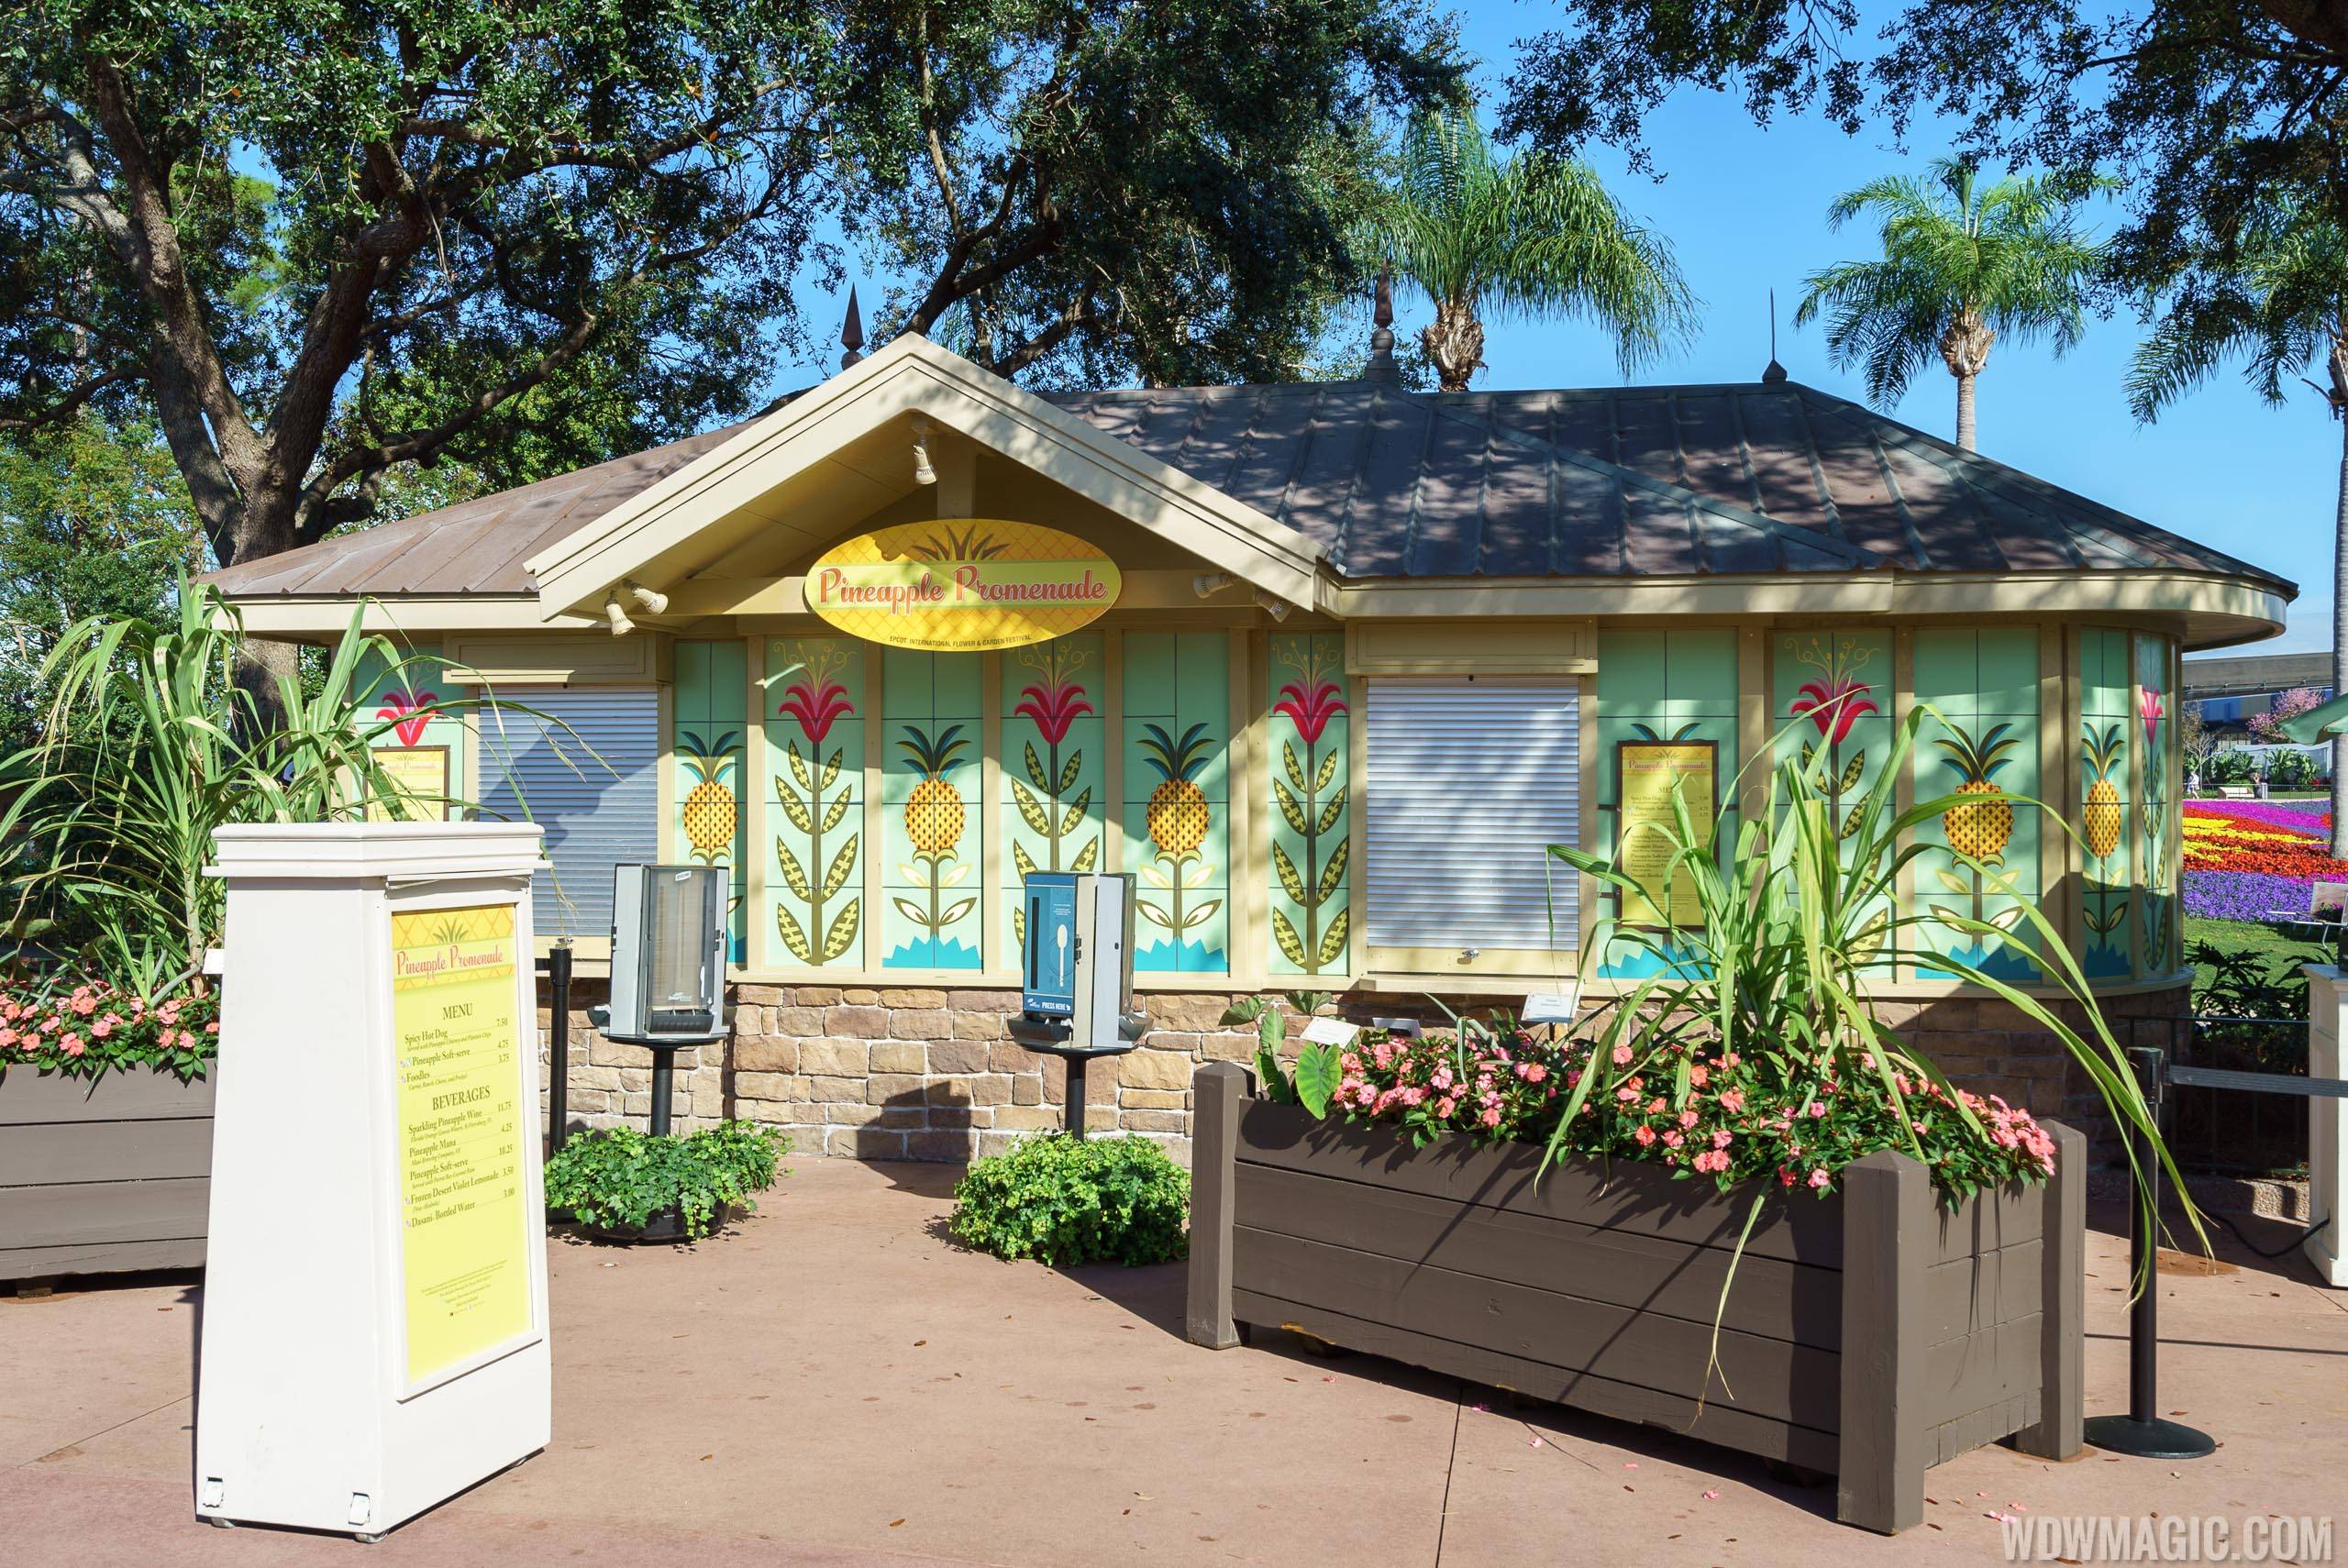 2017 Epcot Flower and Garden Festival Outdoor Kitchen kiosks - Pineapple Promenade kiosk